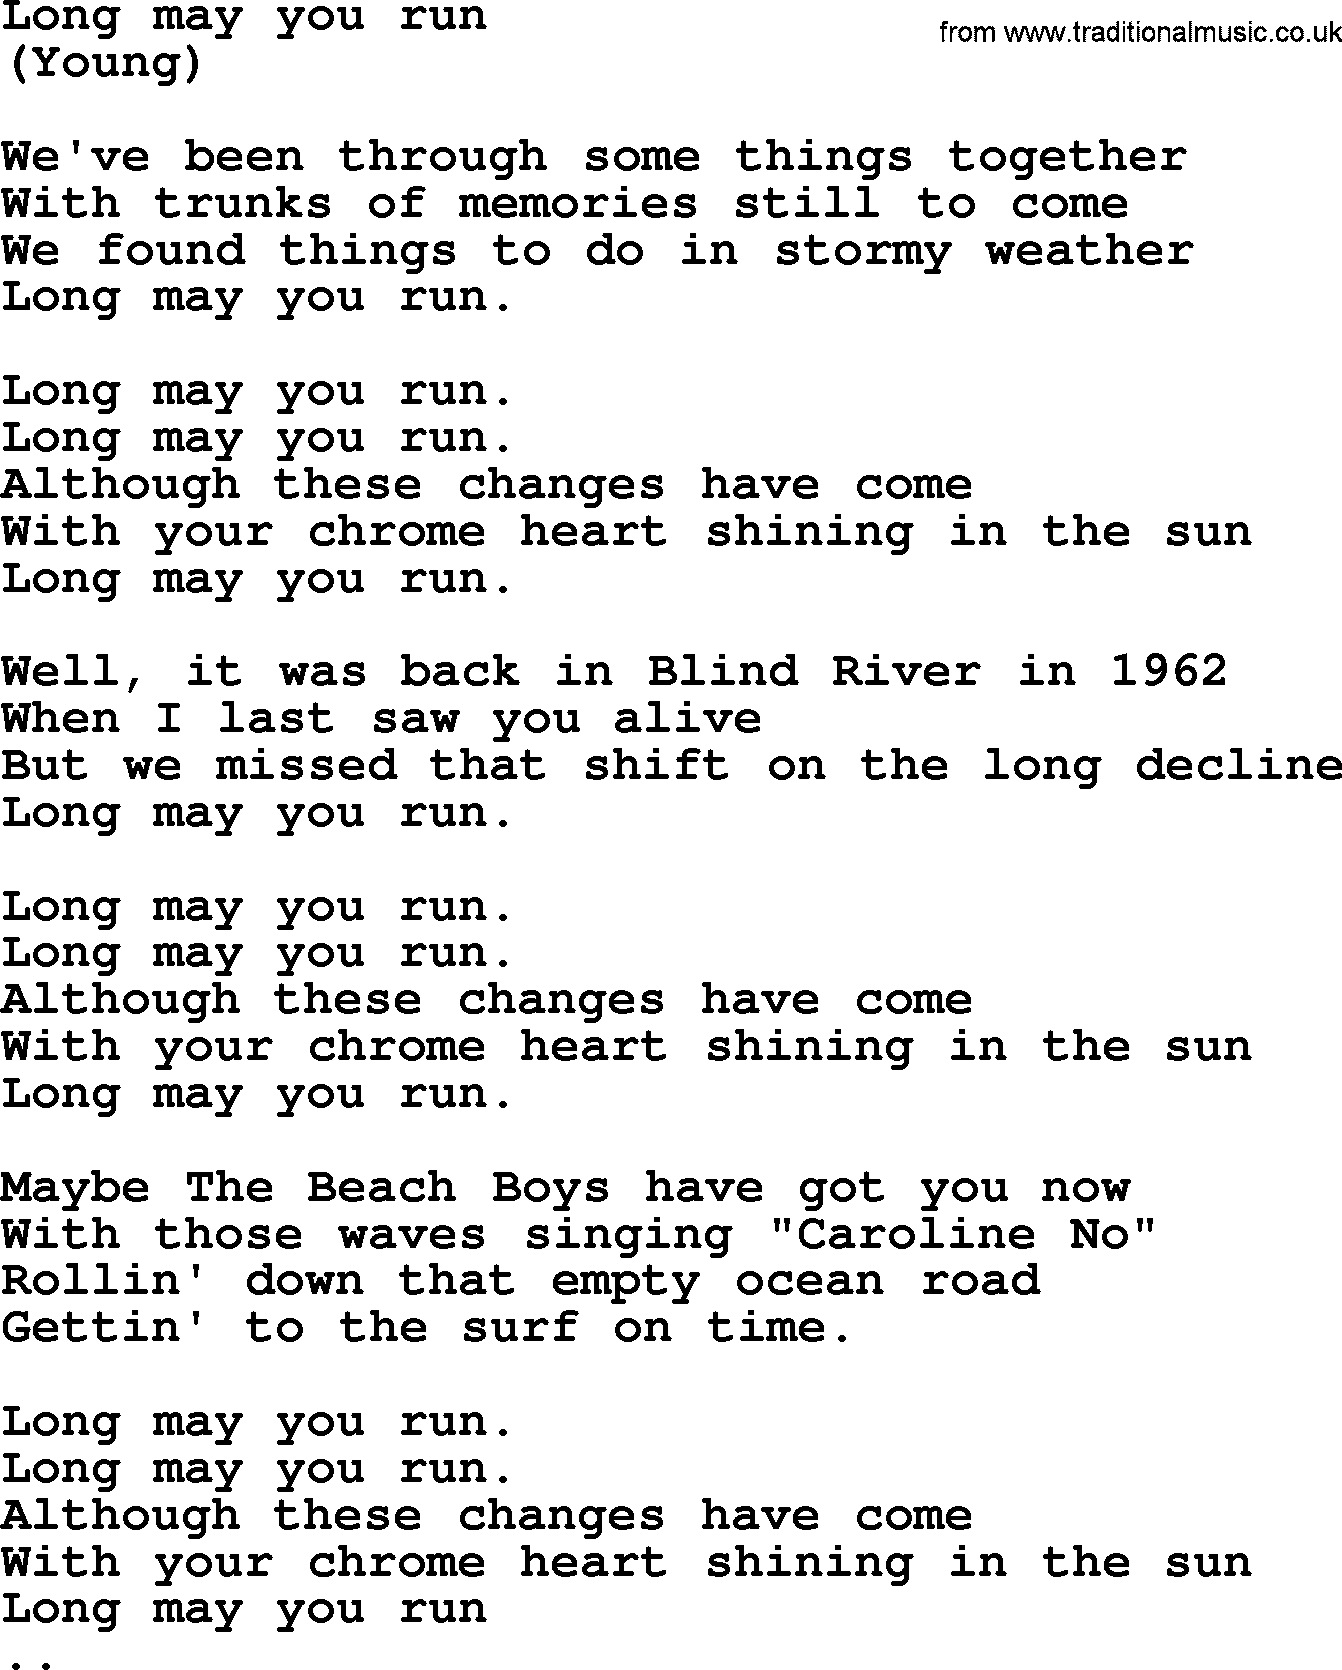 The Byrds song Long May You Run, lyrics